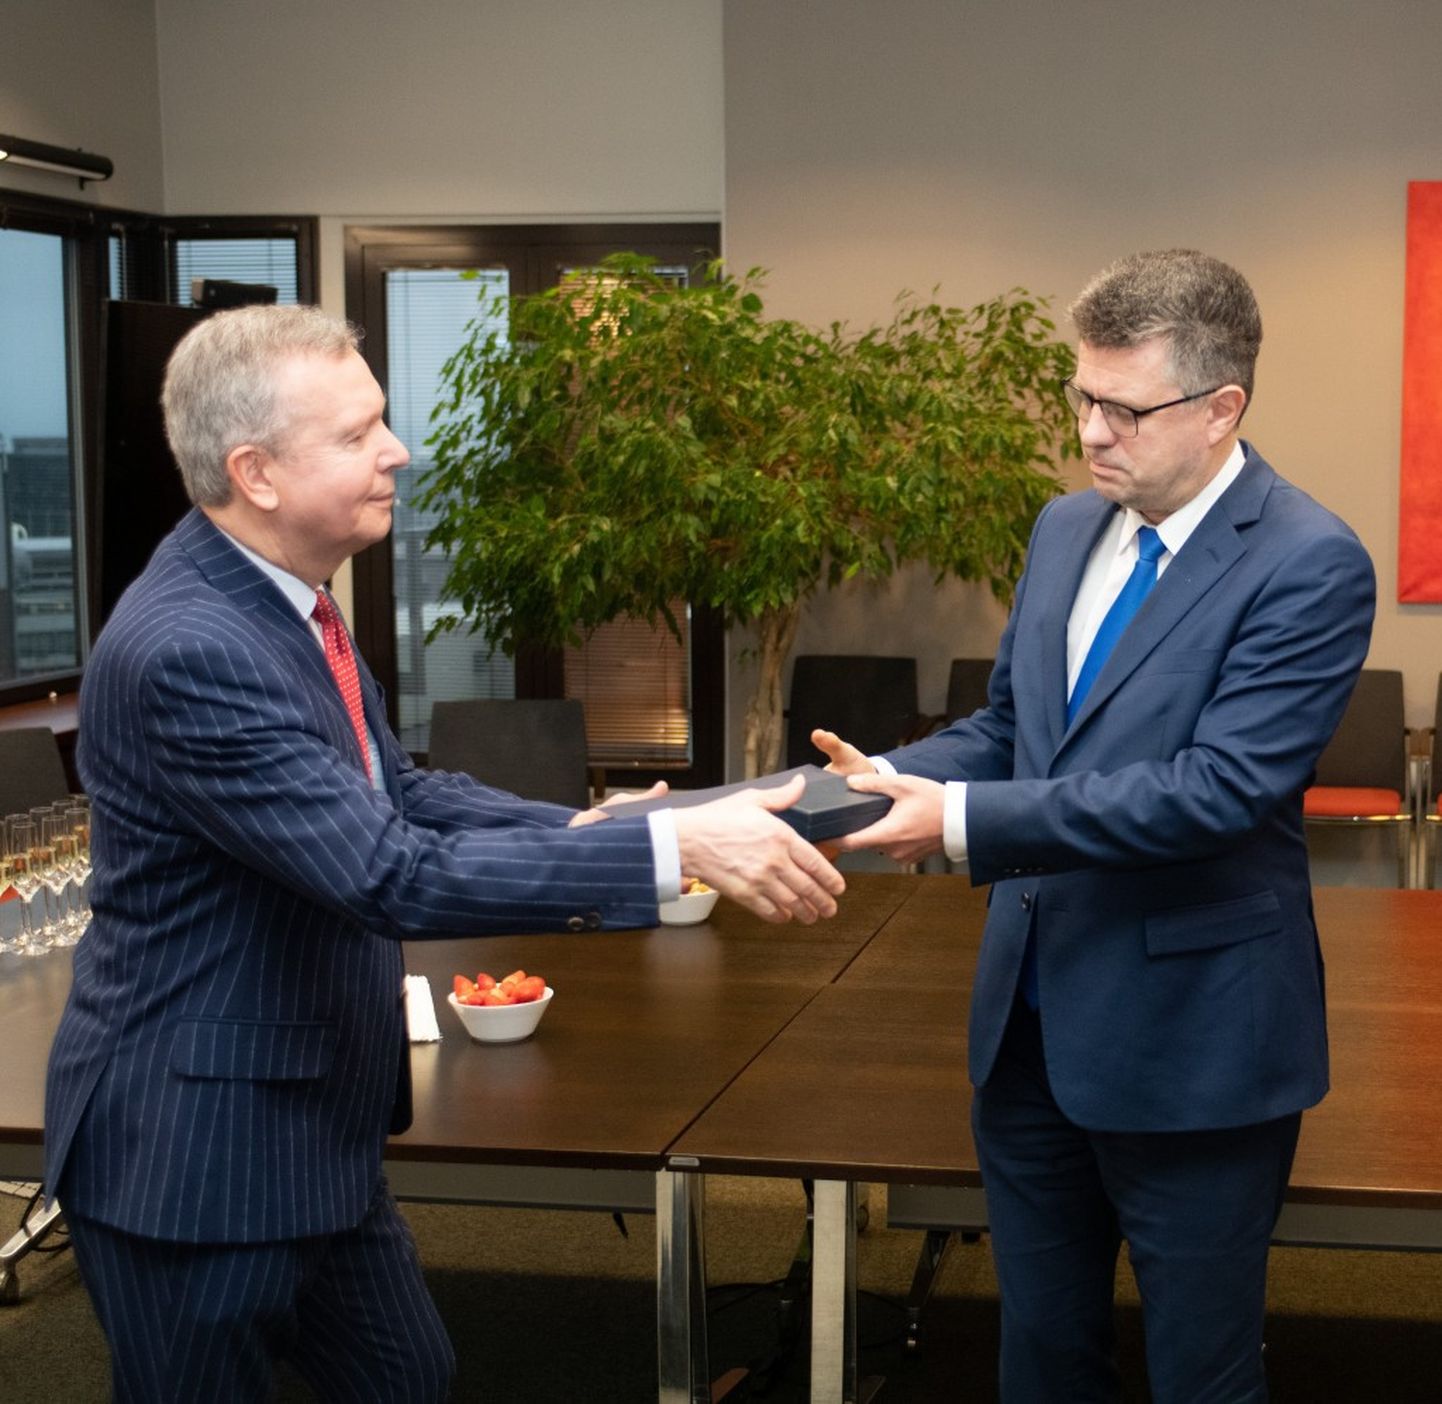 Посол Эстонии Маргус Лайдре, покинувший Москву, получил крест за заслуги МИД от министра иностранных дел Урмаса Рейнсалу.